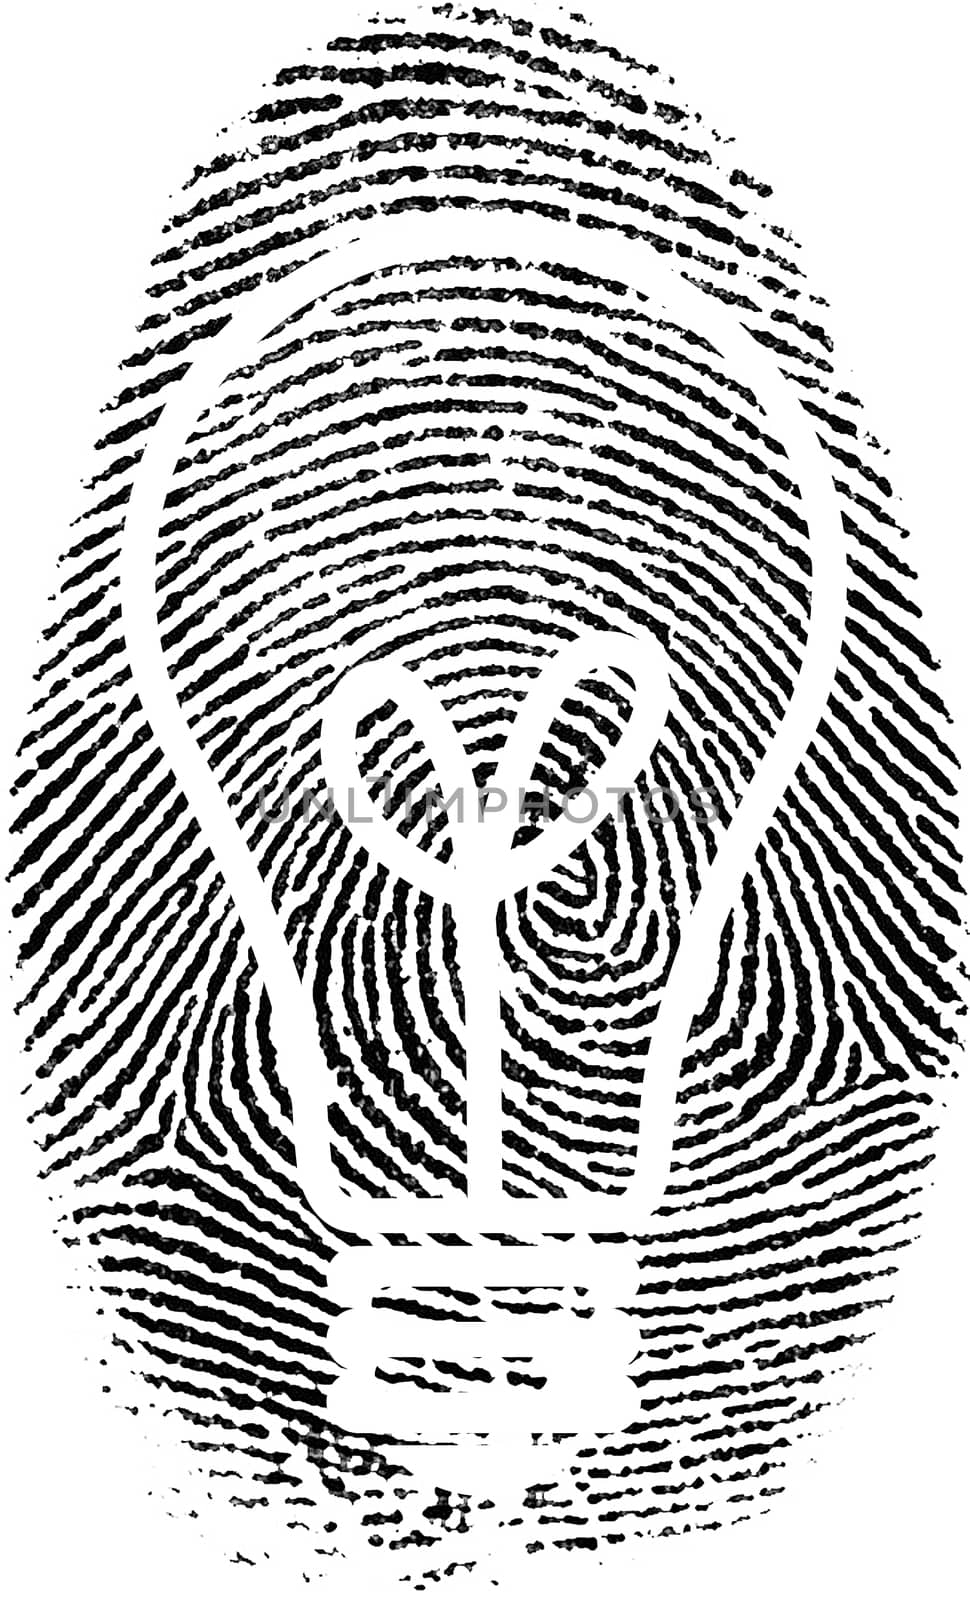 Fingerprint with light bulb silhouette inside by applesstock